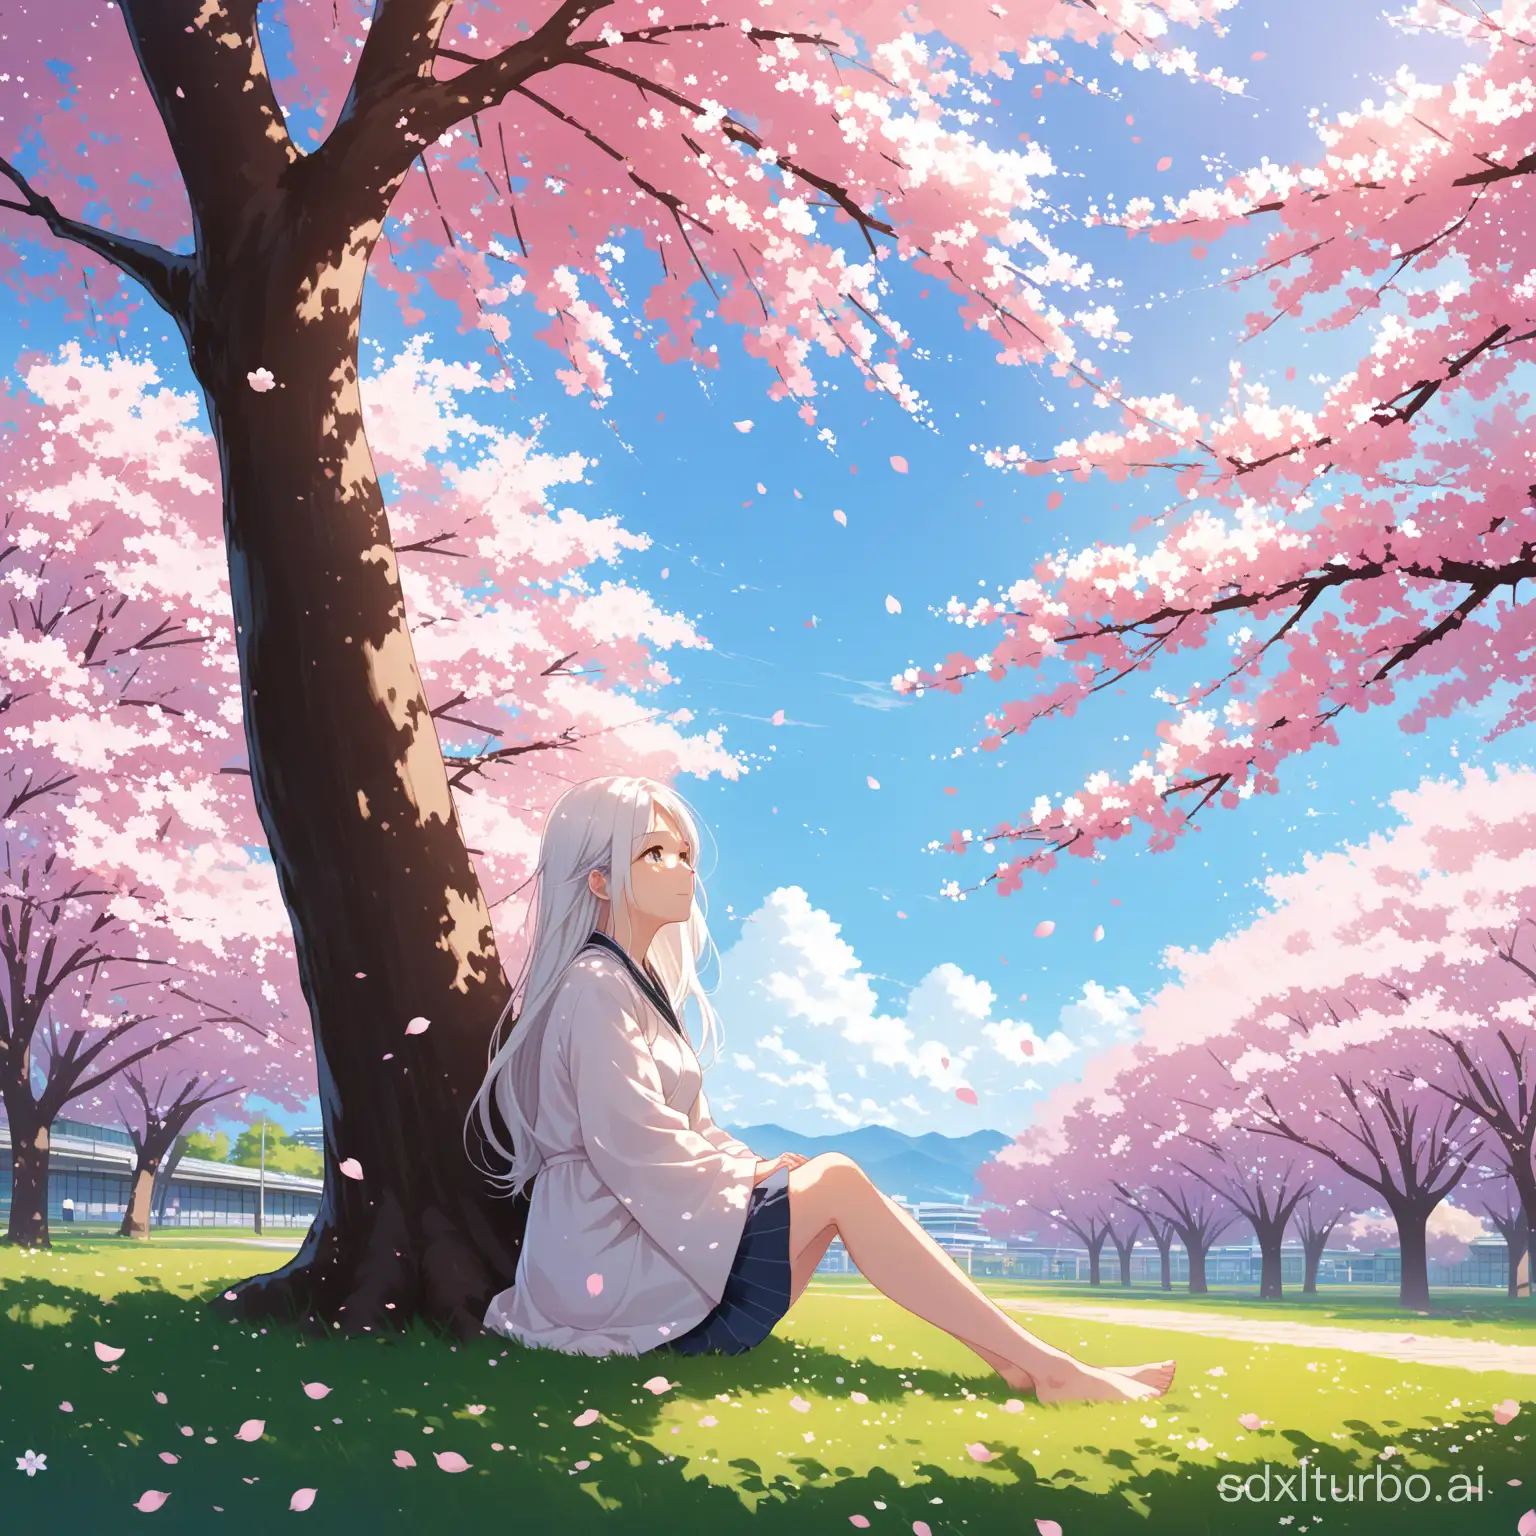 在校园中，一位长发且白发女孩坐在樱花树下，她的身高大概有1.7米，她静静的坐在樱花树下，随着风的吹过，花瓣散落在空中，这是一个初夏的下午，远处的天空十分晴朗